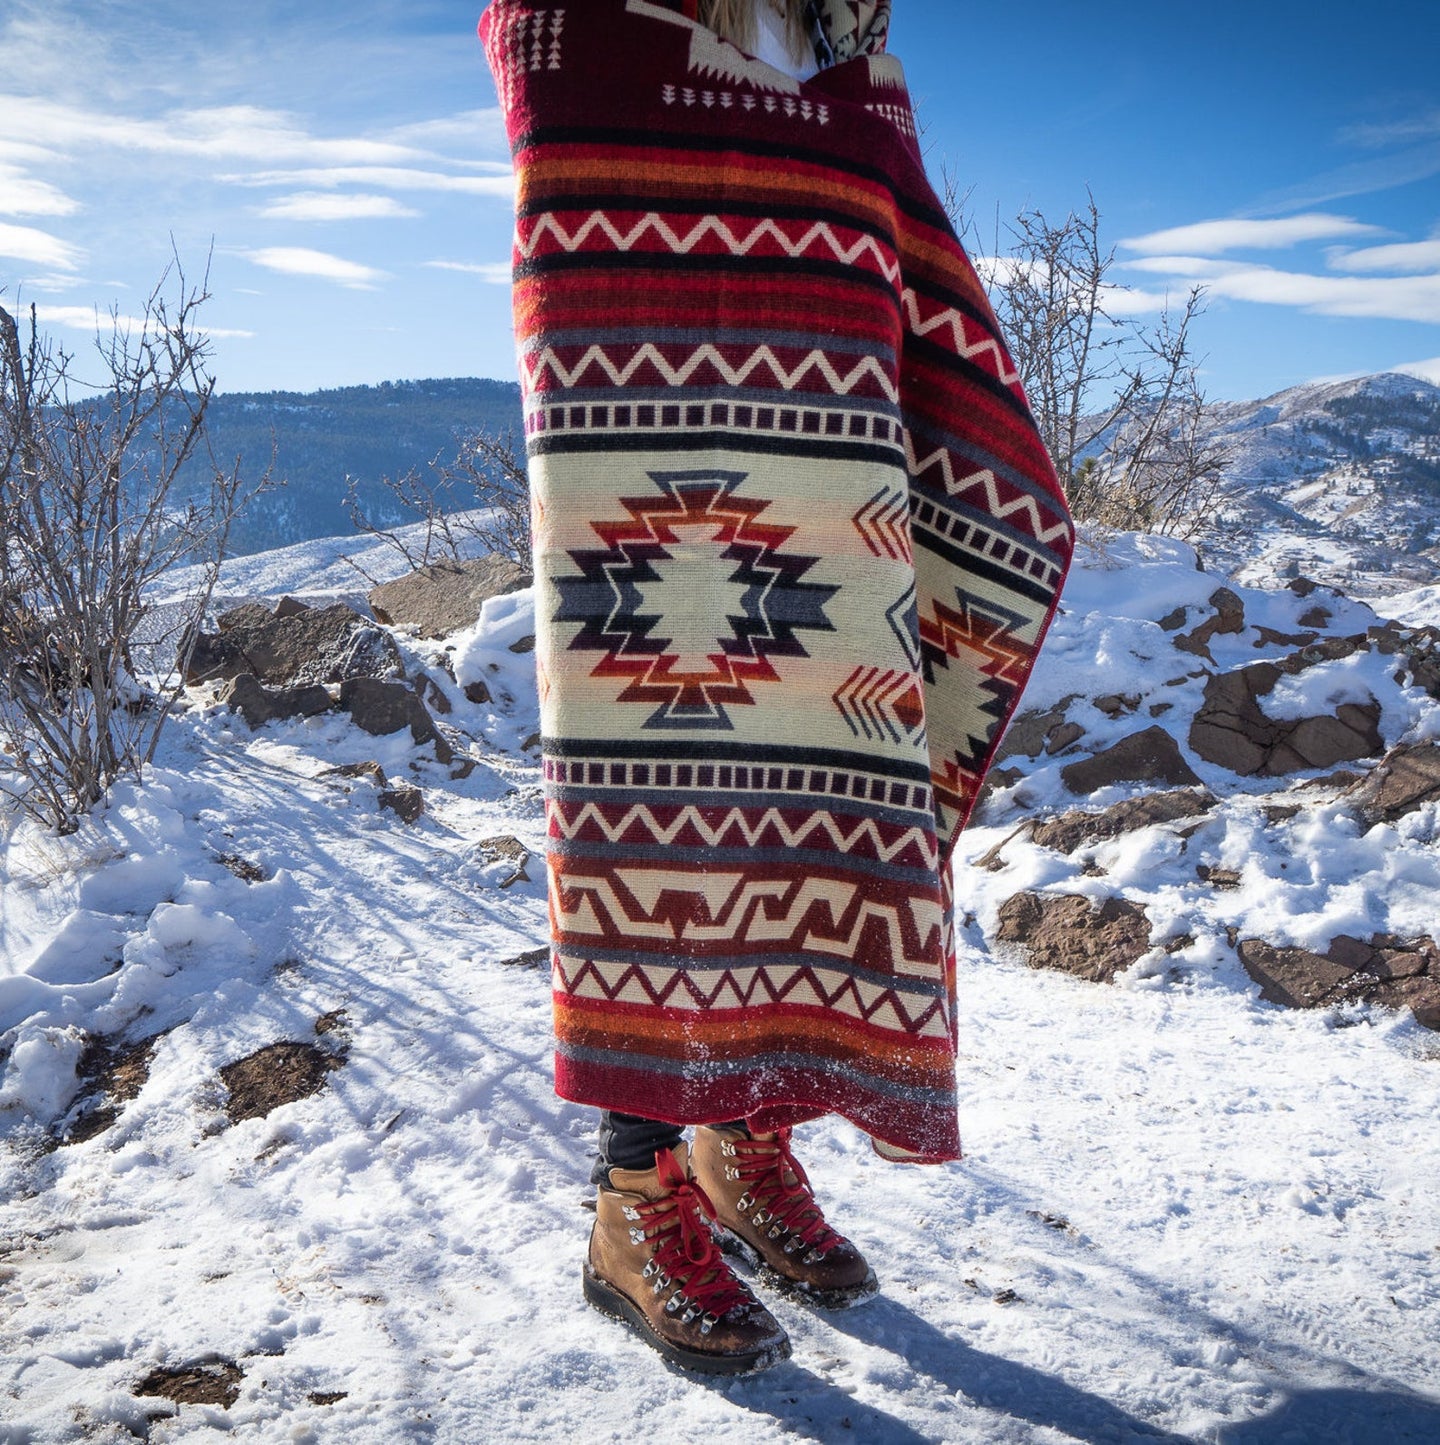 Andean Alpaca Wool Blanket - Wildfire